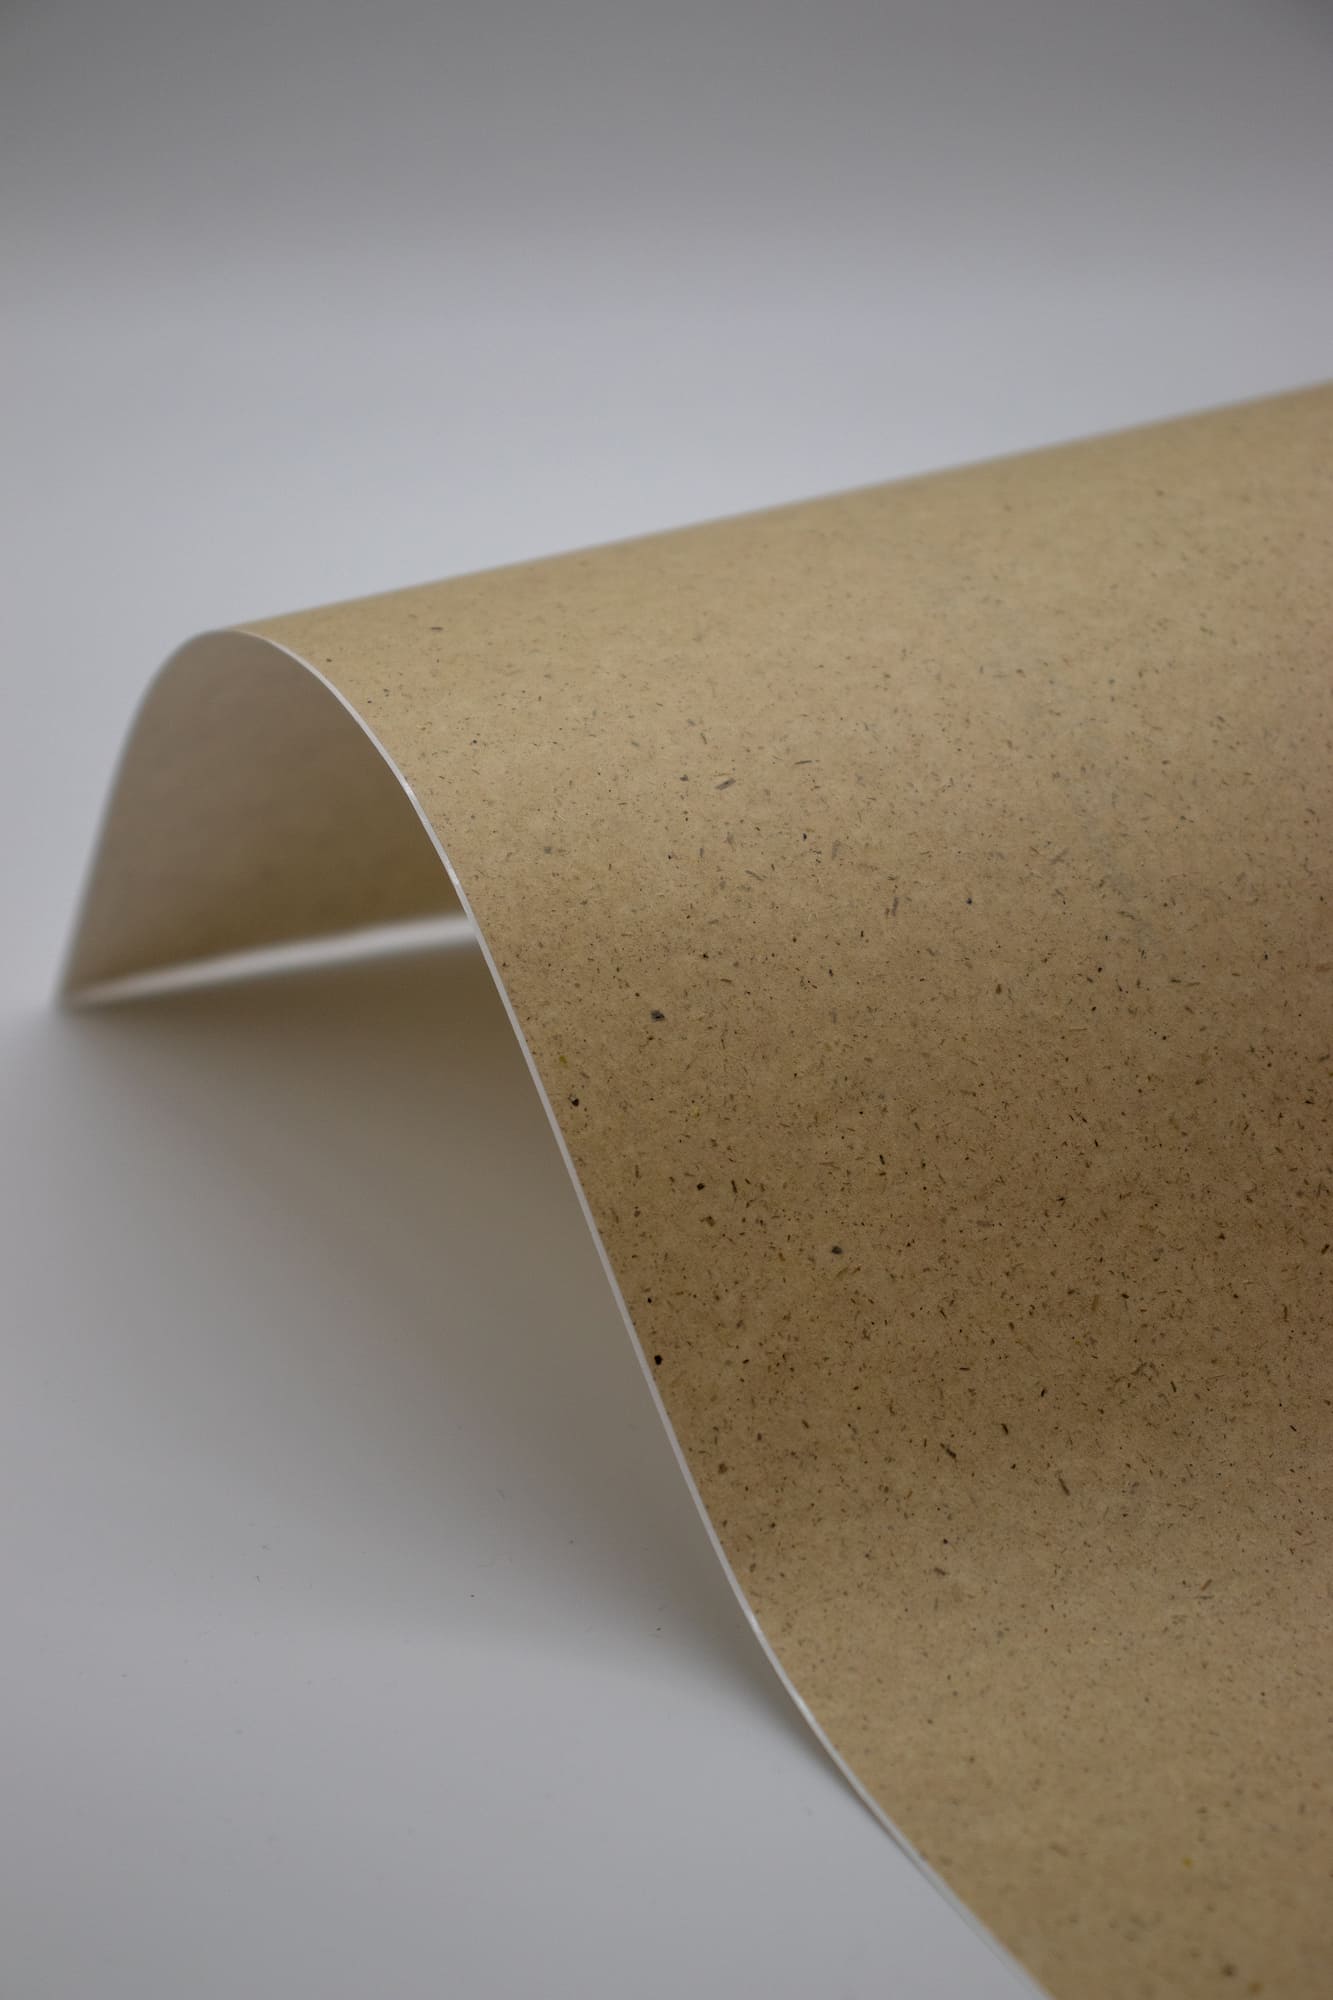 ENDI-HAFT Graspapier Etiketten, 60 mm rund auf DIN A4 Bögen